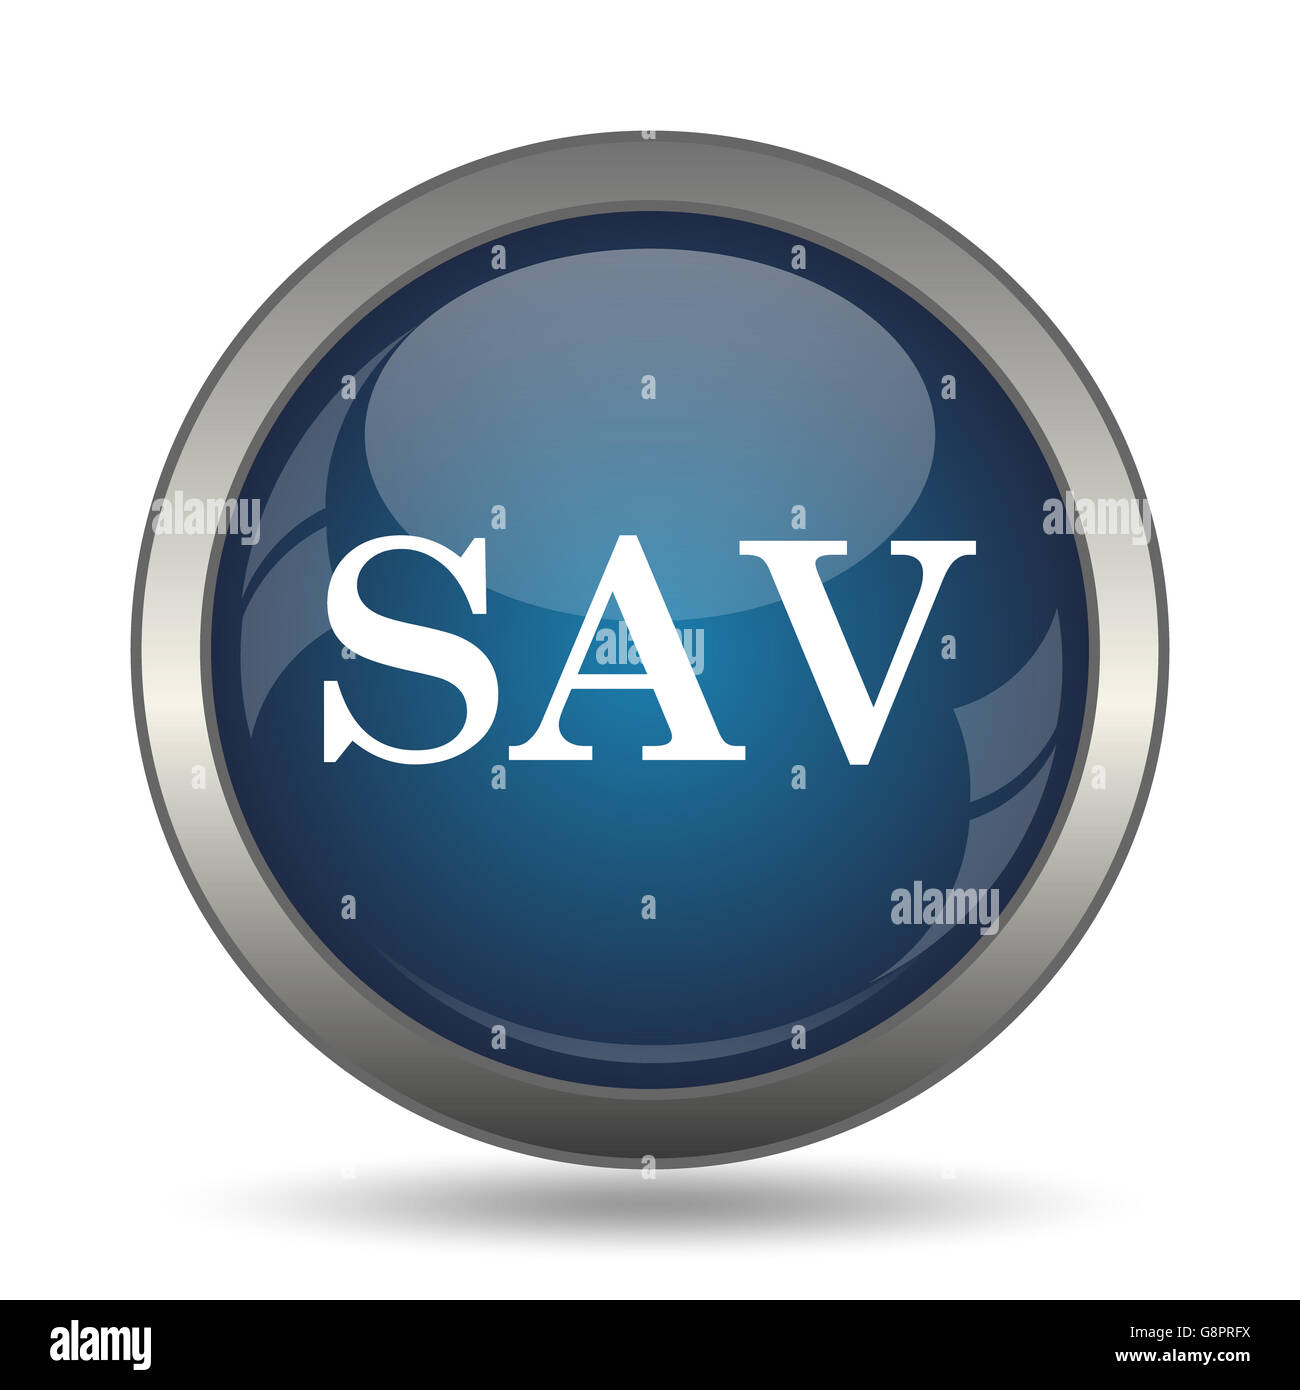 SAV icon. Internet button on white background. Stock Photo